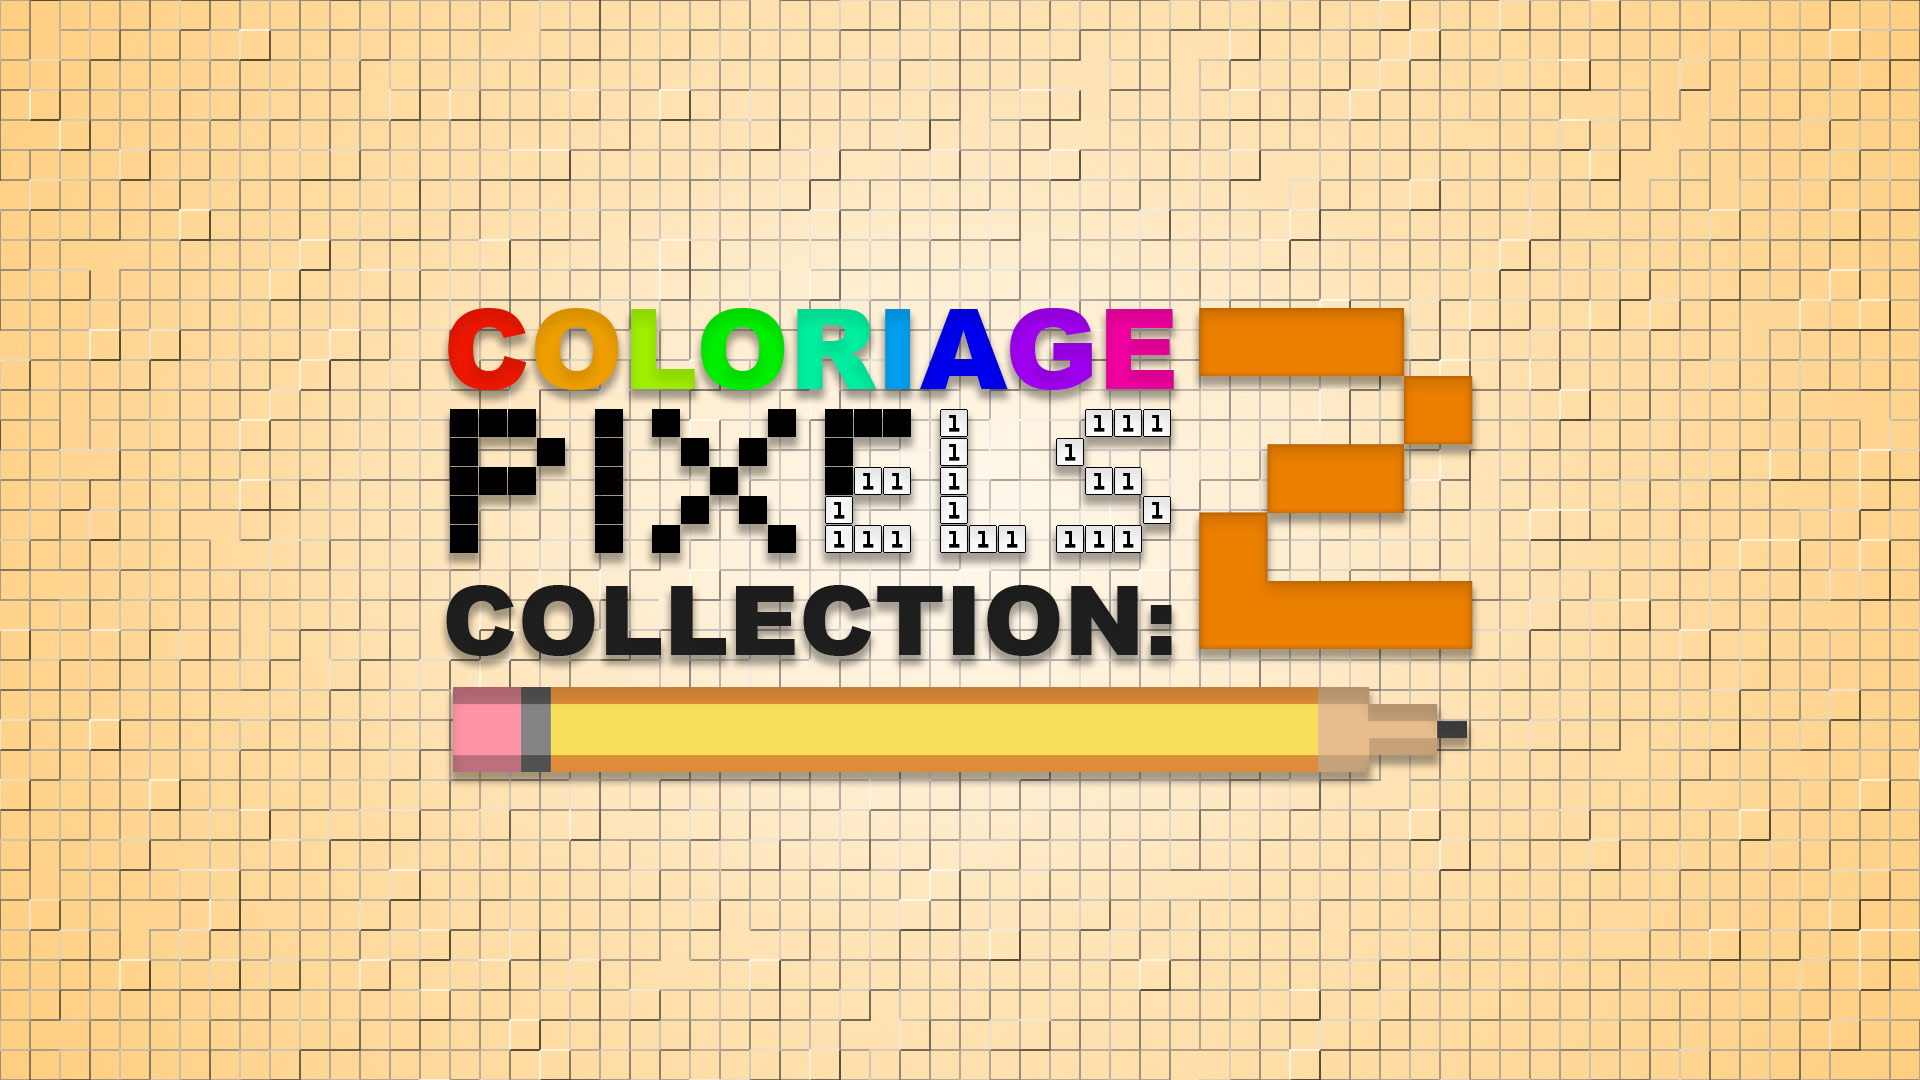 Coloriage de pixels : collection 2